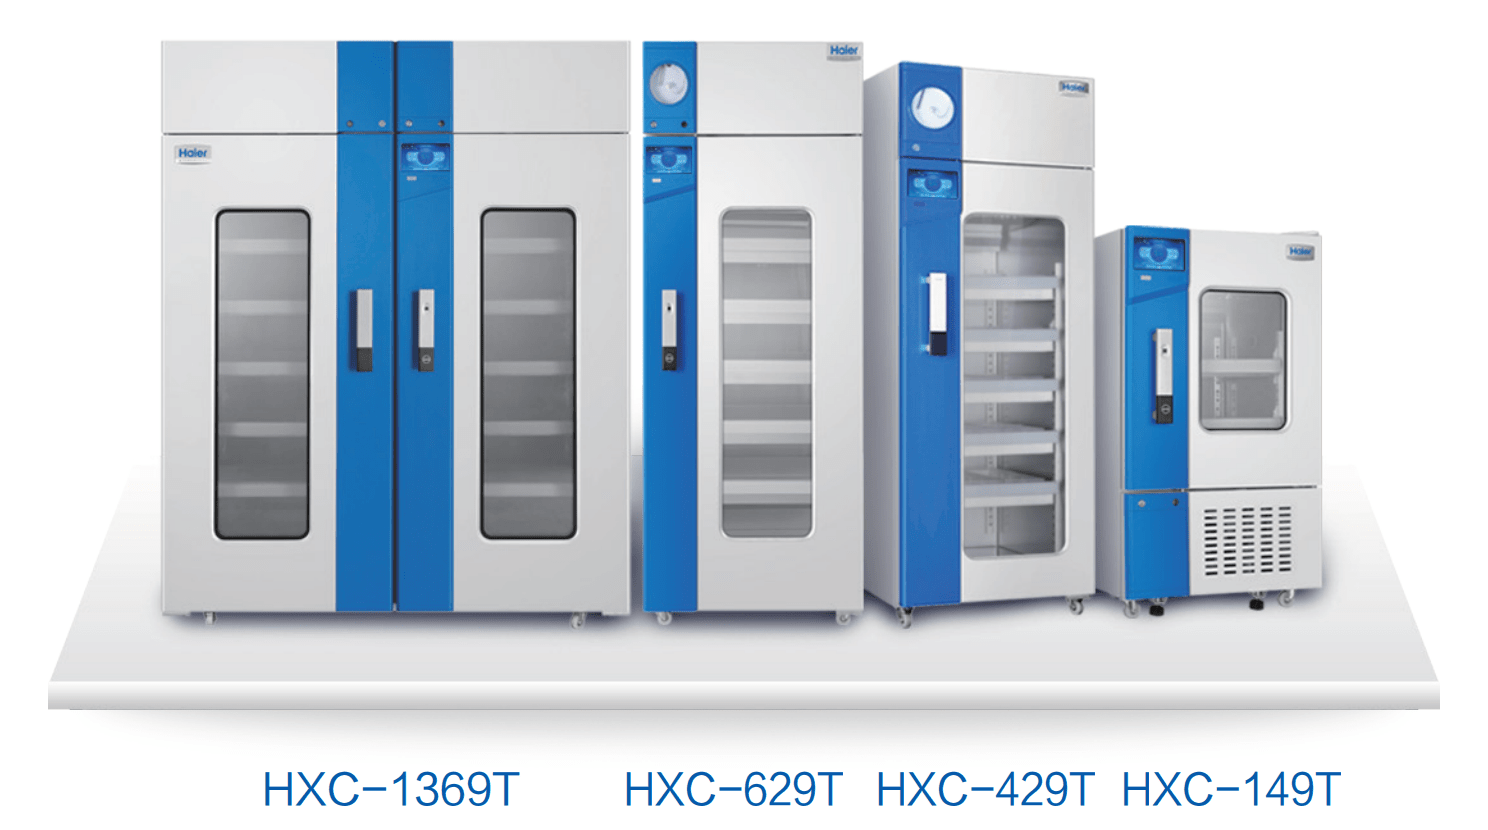 Tủ trữ máu chuyên dụng màn LED Haier HXC-149T | HXC-429T | HXC-629T | HXC-1369T